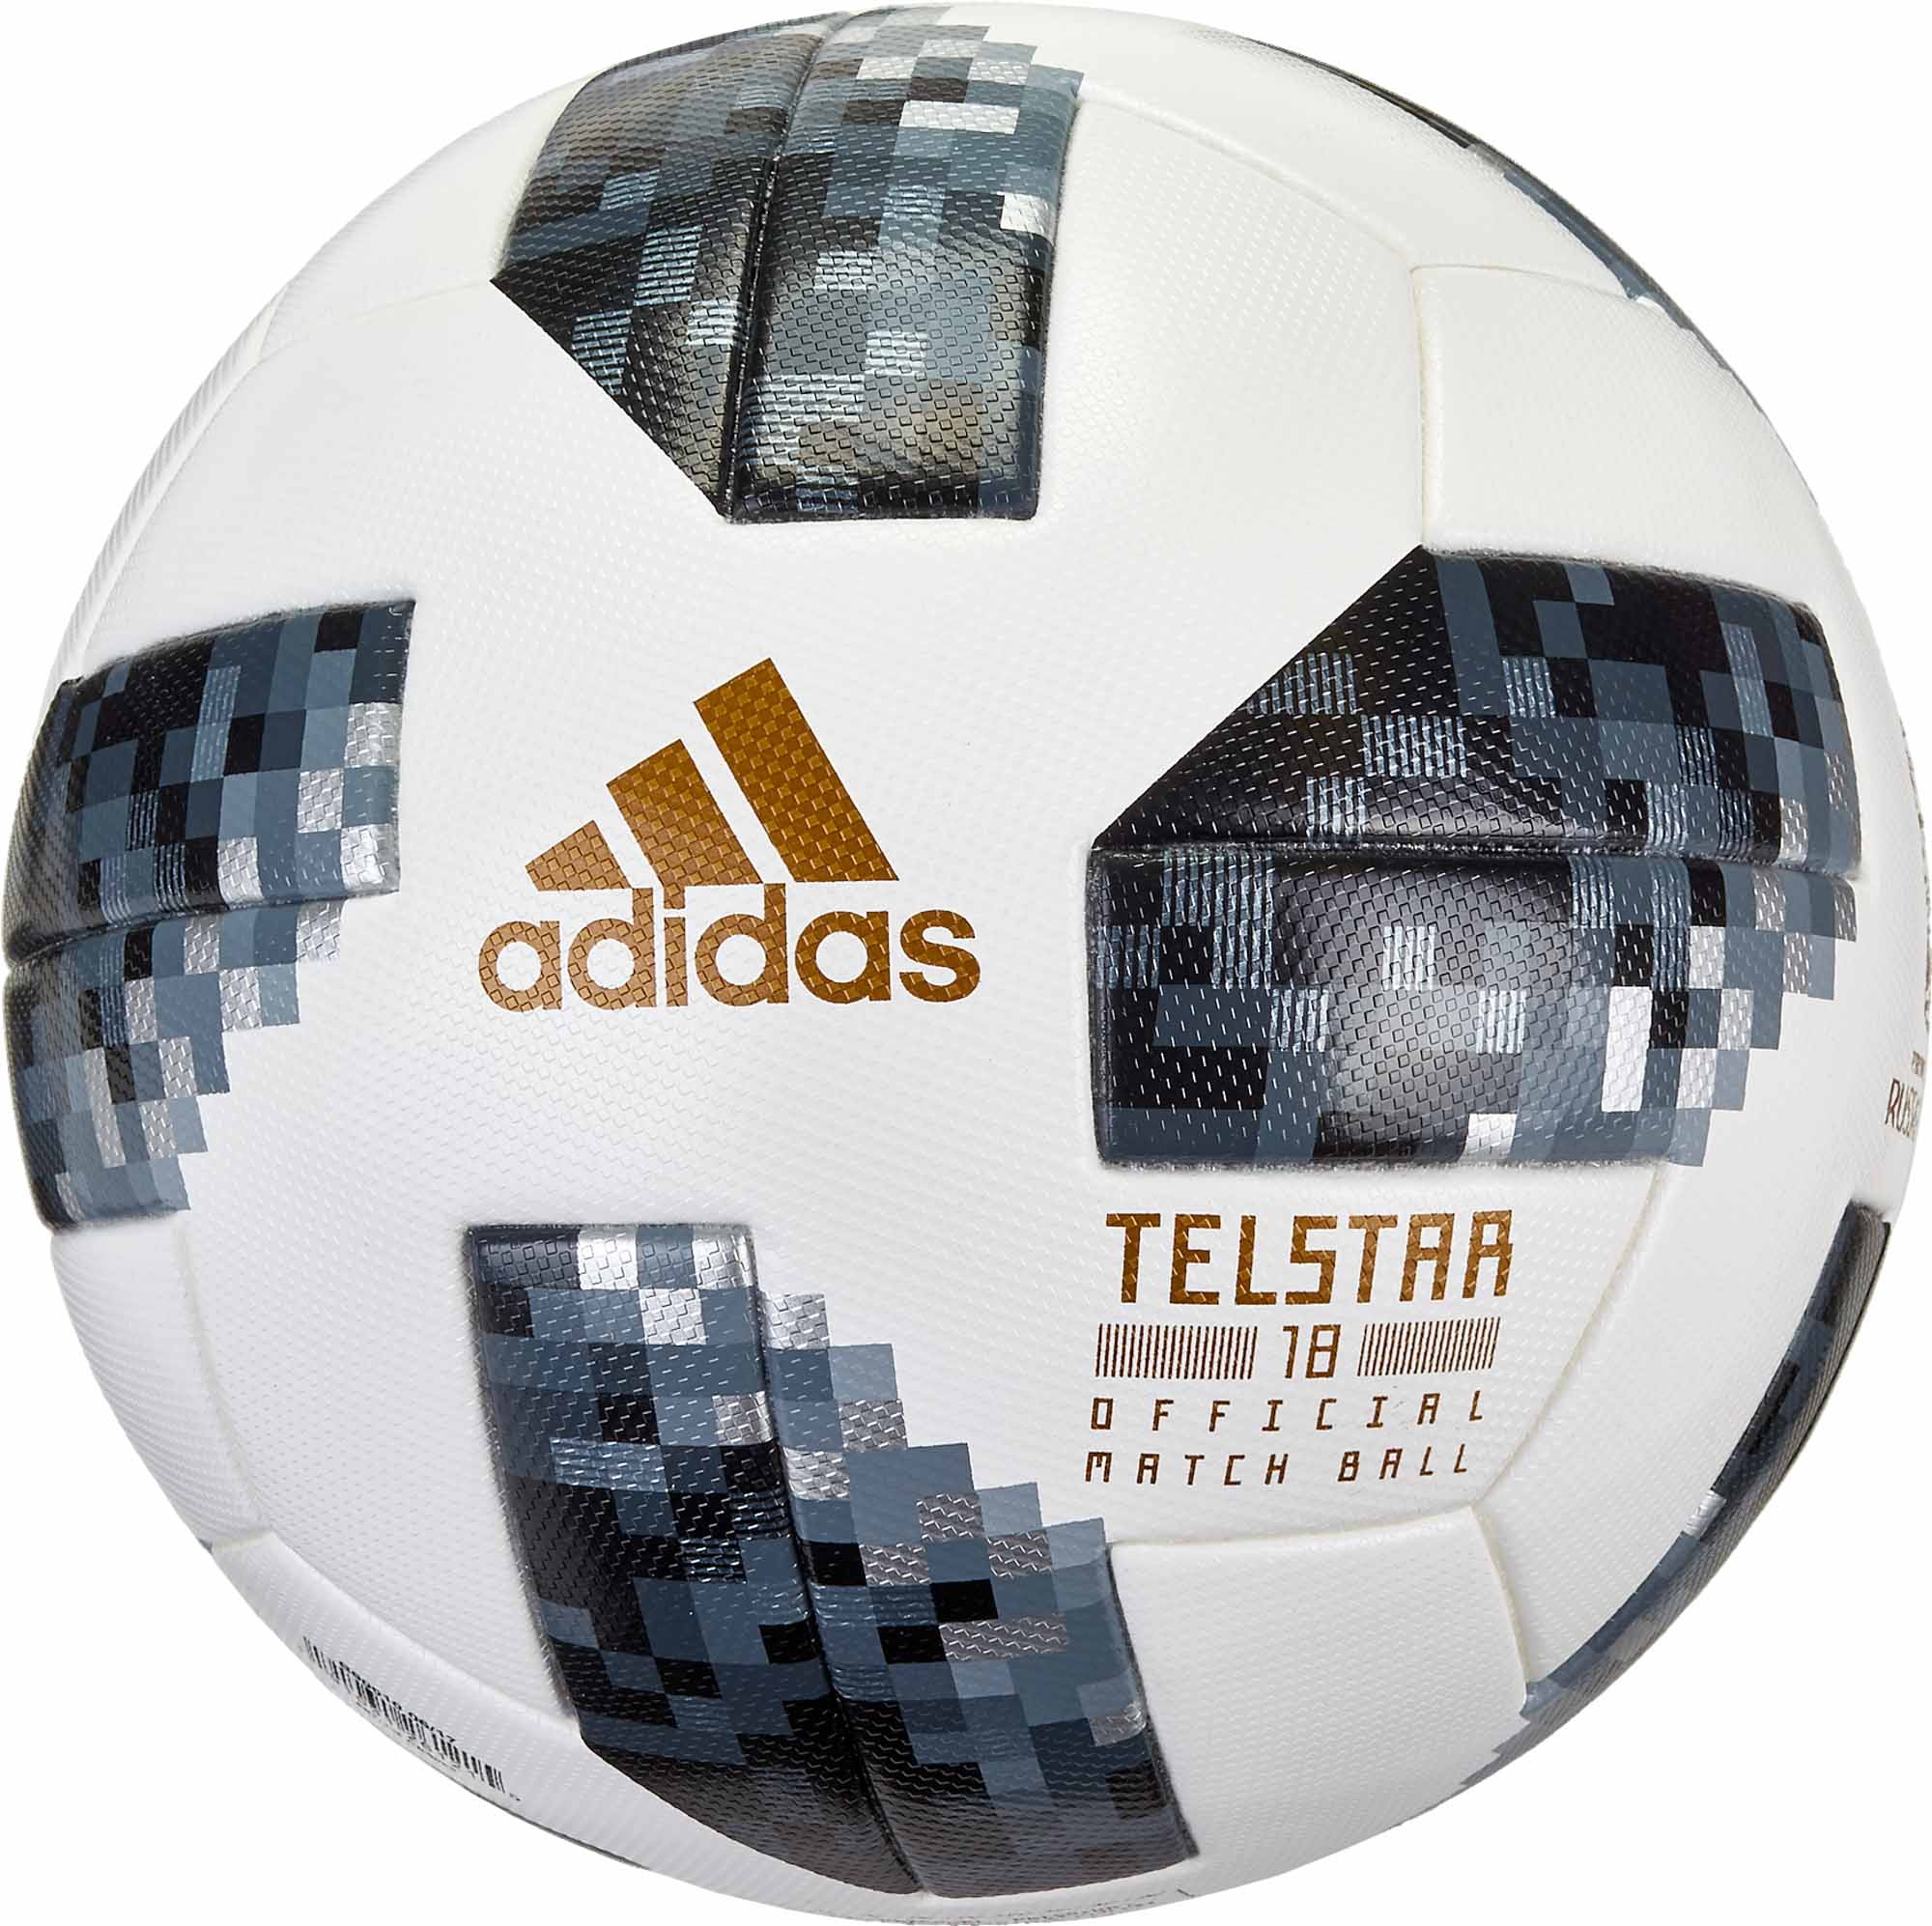 telstar official match ball